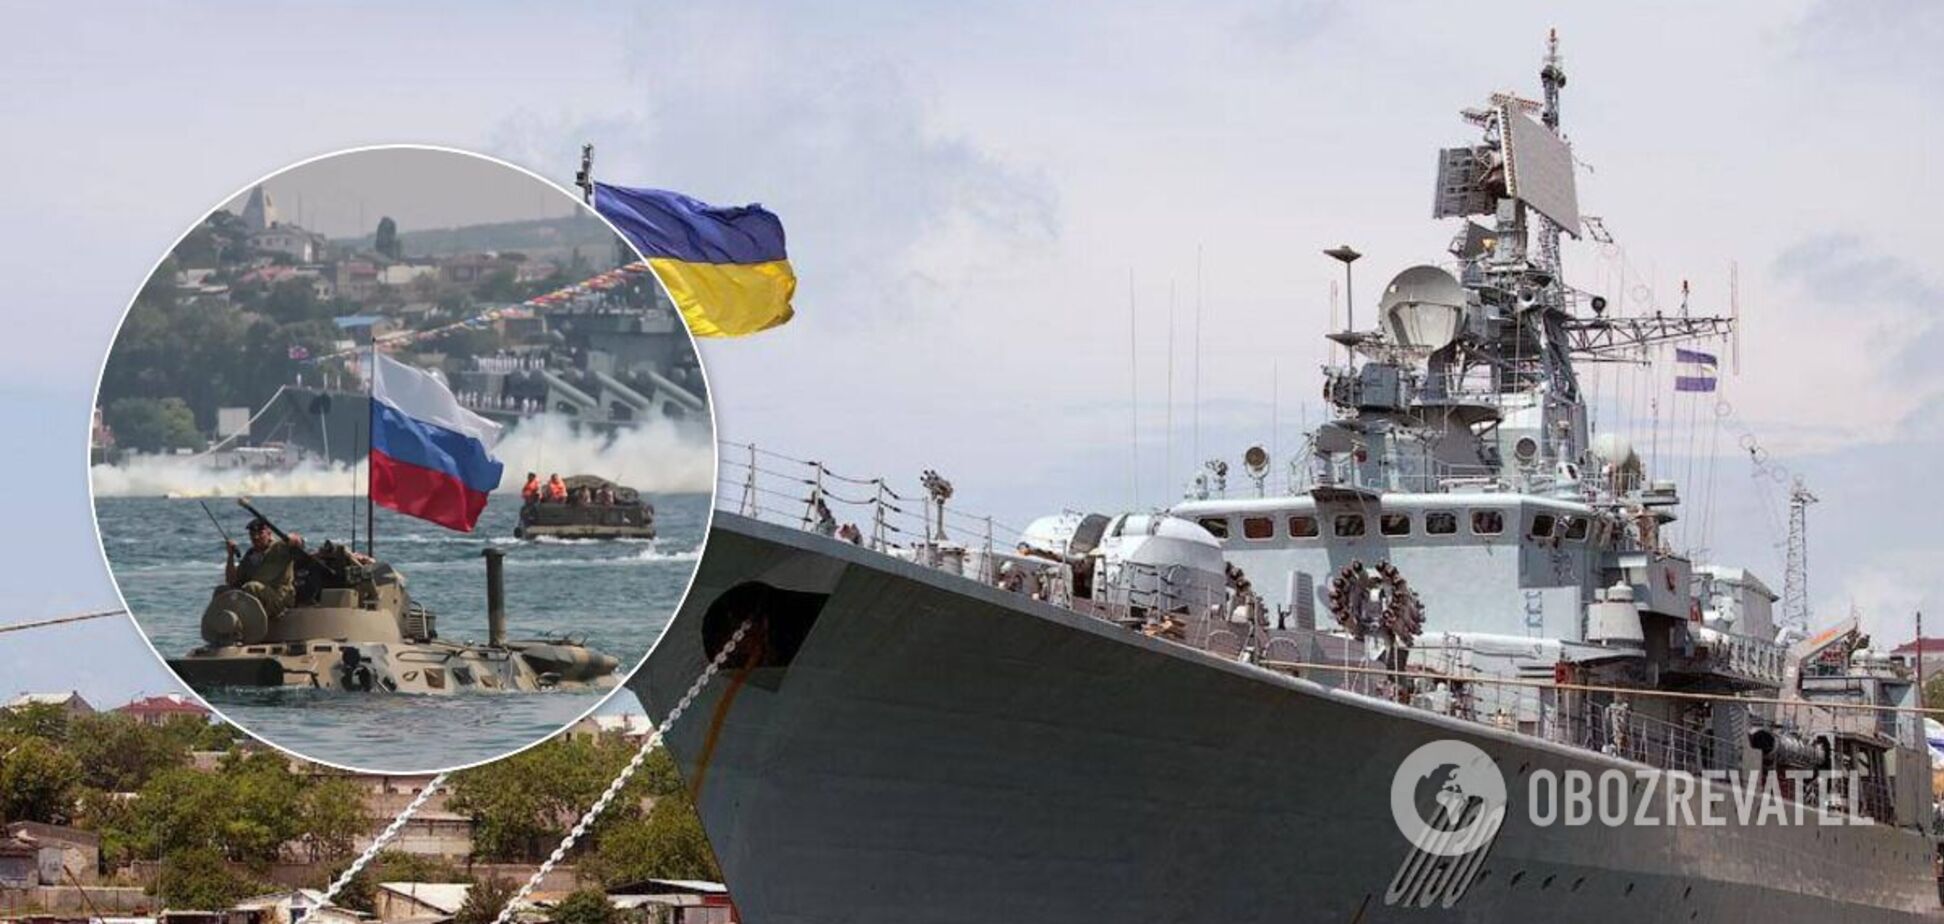 В России пригрозили взять 'под прицел боевых систем' украинские военно-морские базы в Черном море